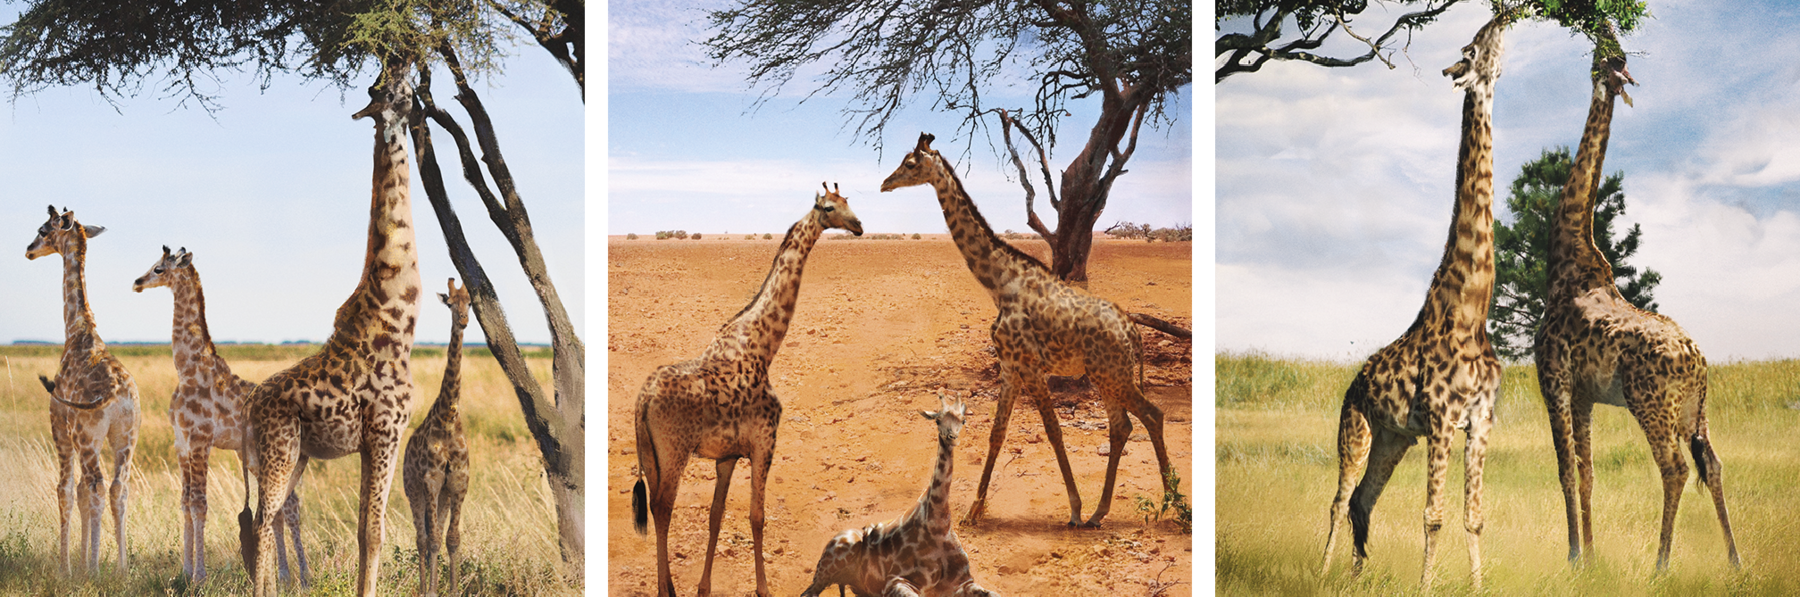 Ilustração em três quadros. Quadro 1: girafa maior estica o pescoço para comer as folhas no alto de uma árvore enquanto outras três girafas menores estão ao seu redor.
Quadro 2: Duas girafas maiores e uma menor próximas a uma árvore. Quadro 3: Duas girafas maiores comendo folhas do alto de uma árvore.